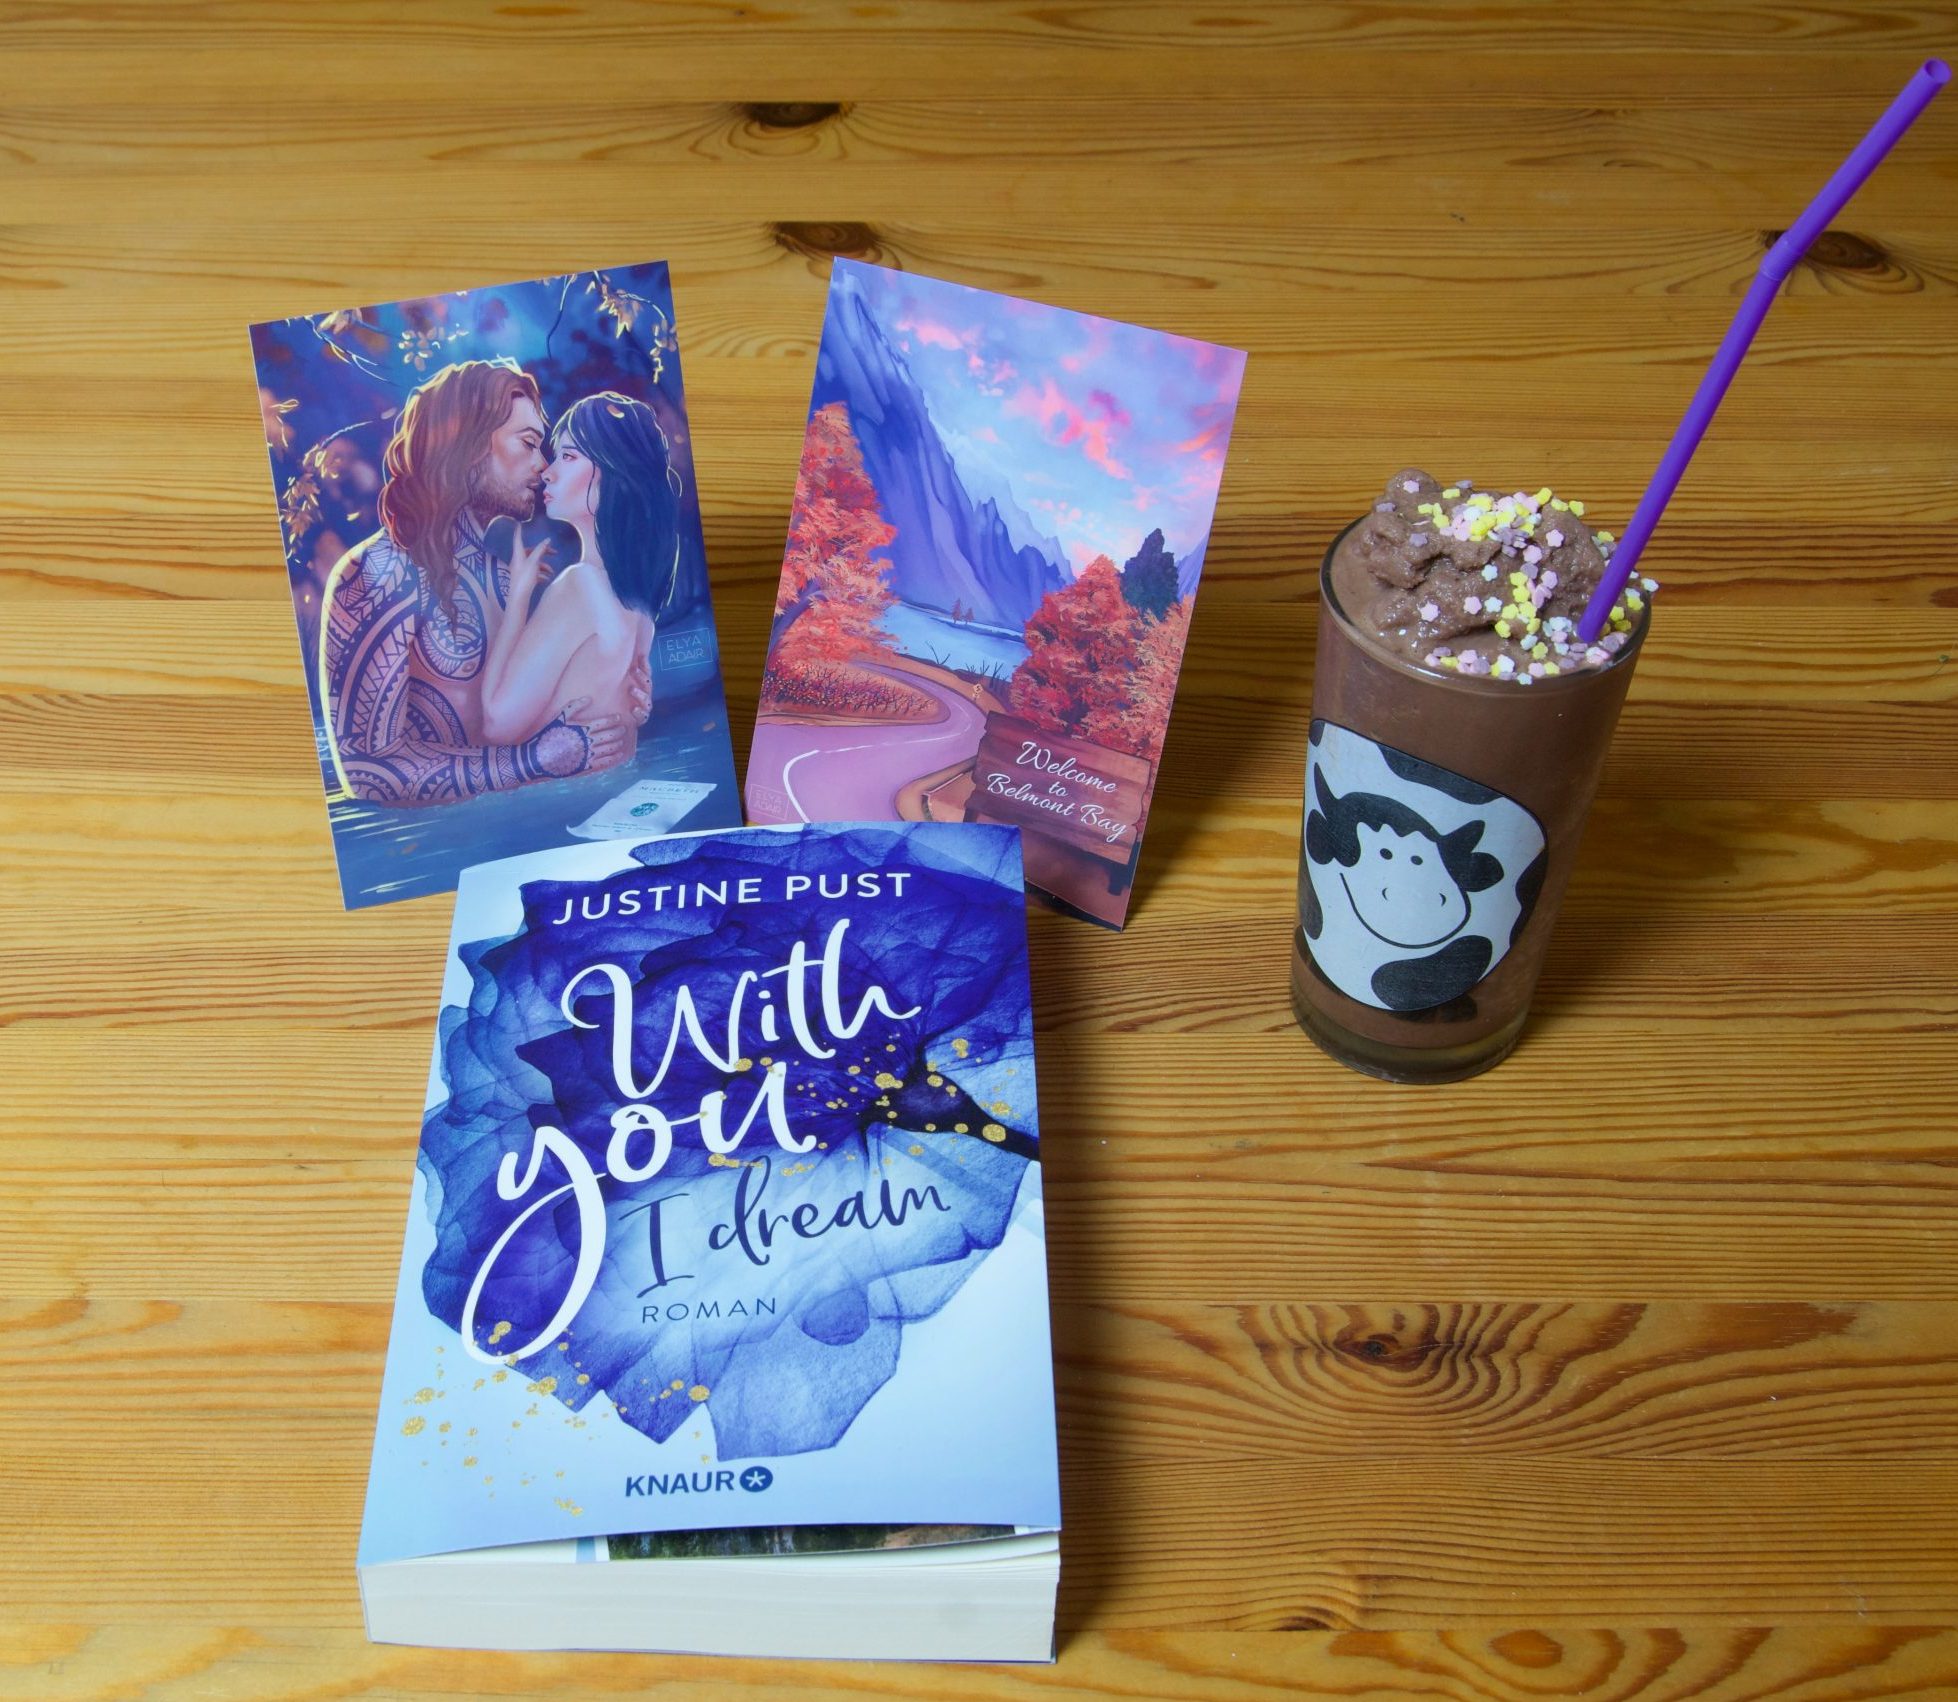 Buch "With you I dream" von Justine Pust mit 2 Motivkarten und ein Glas Milch-Shake mit Kuh-Motiv